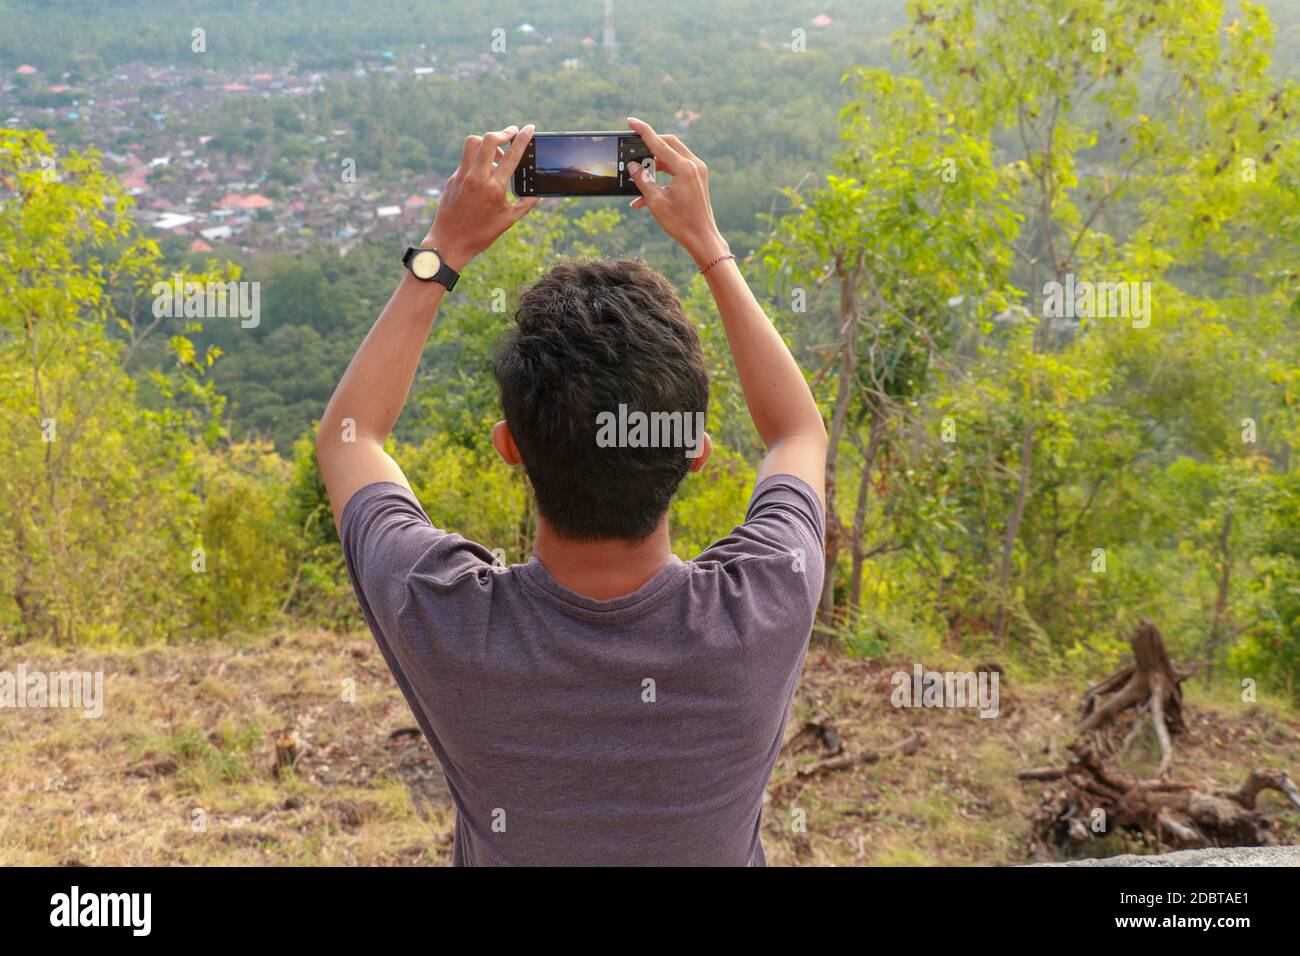 El hombre fotografió montañas en el smartphone. Un joven toma fotos de un volcán con un teléfono móvil. Fotografías de adolescentes indonesios durante los soles Foto de stock